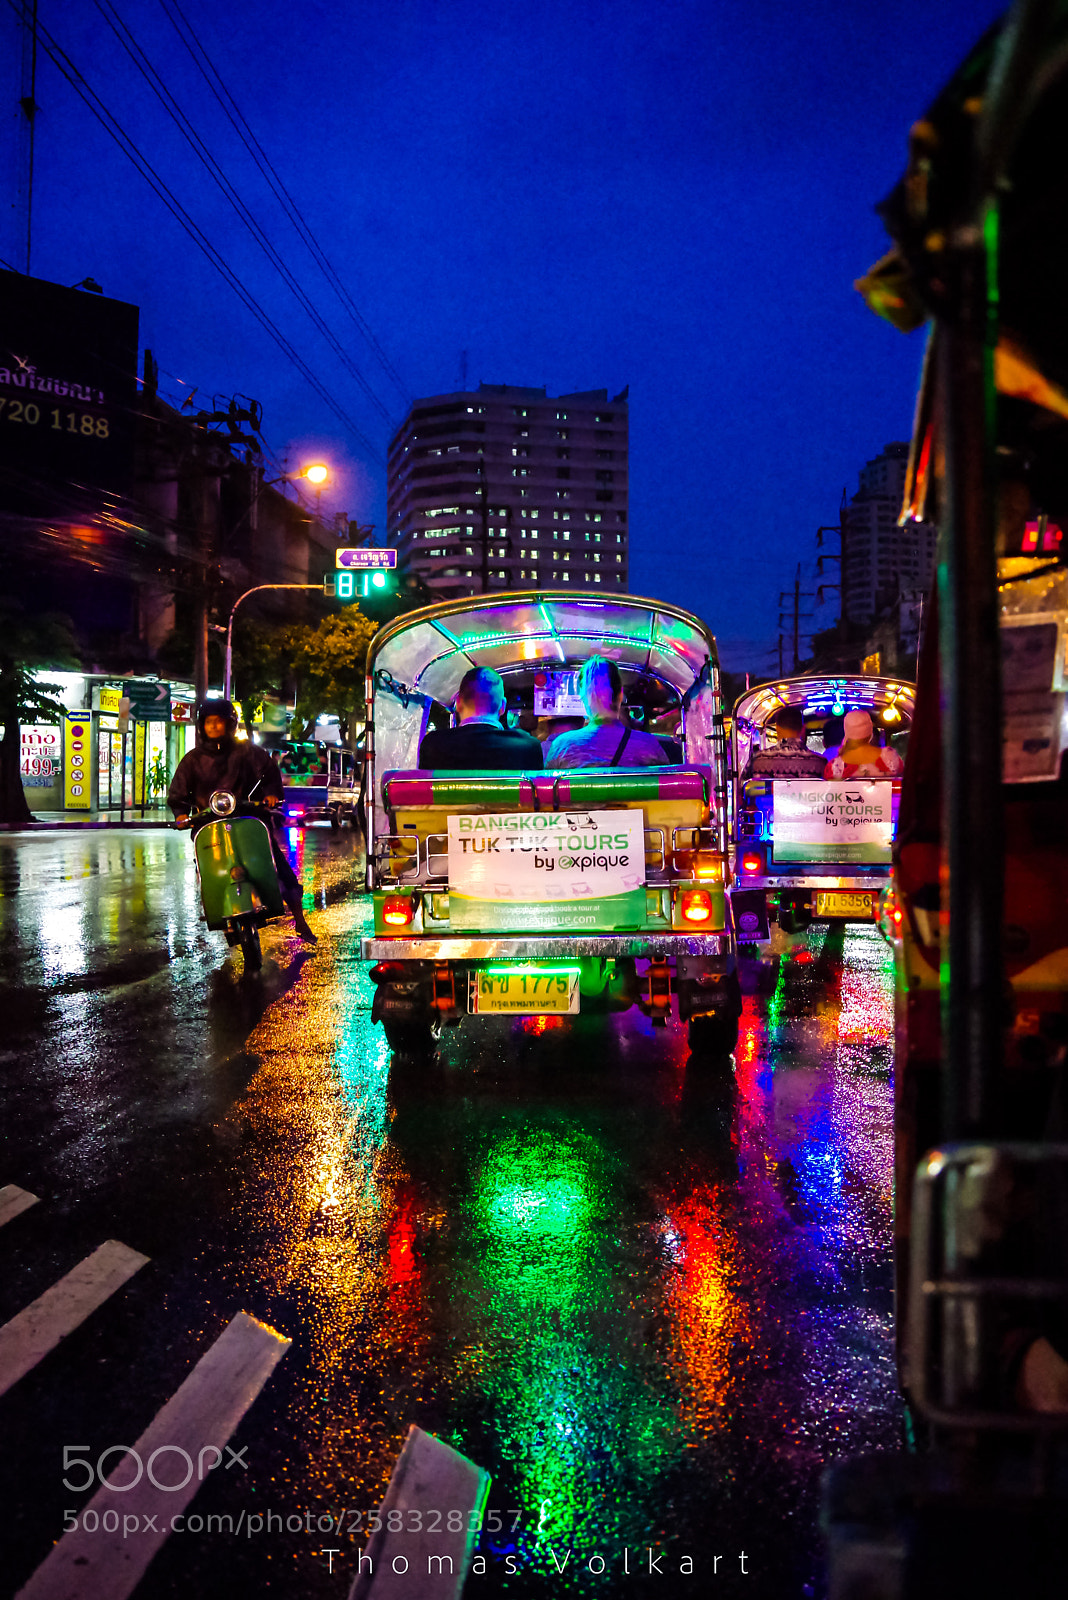 Pentax K-1 sample photo. Tuktuk tour bangkok photography